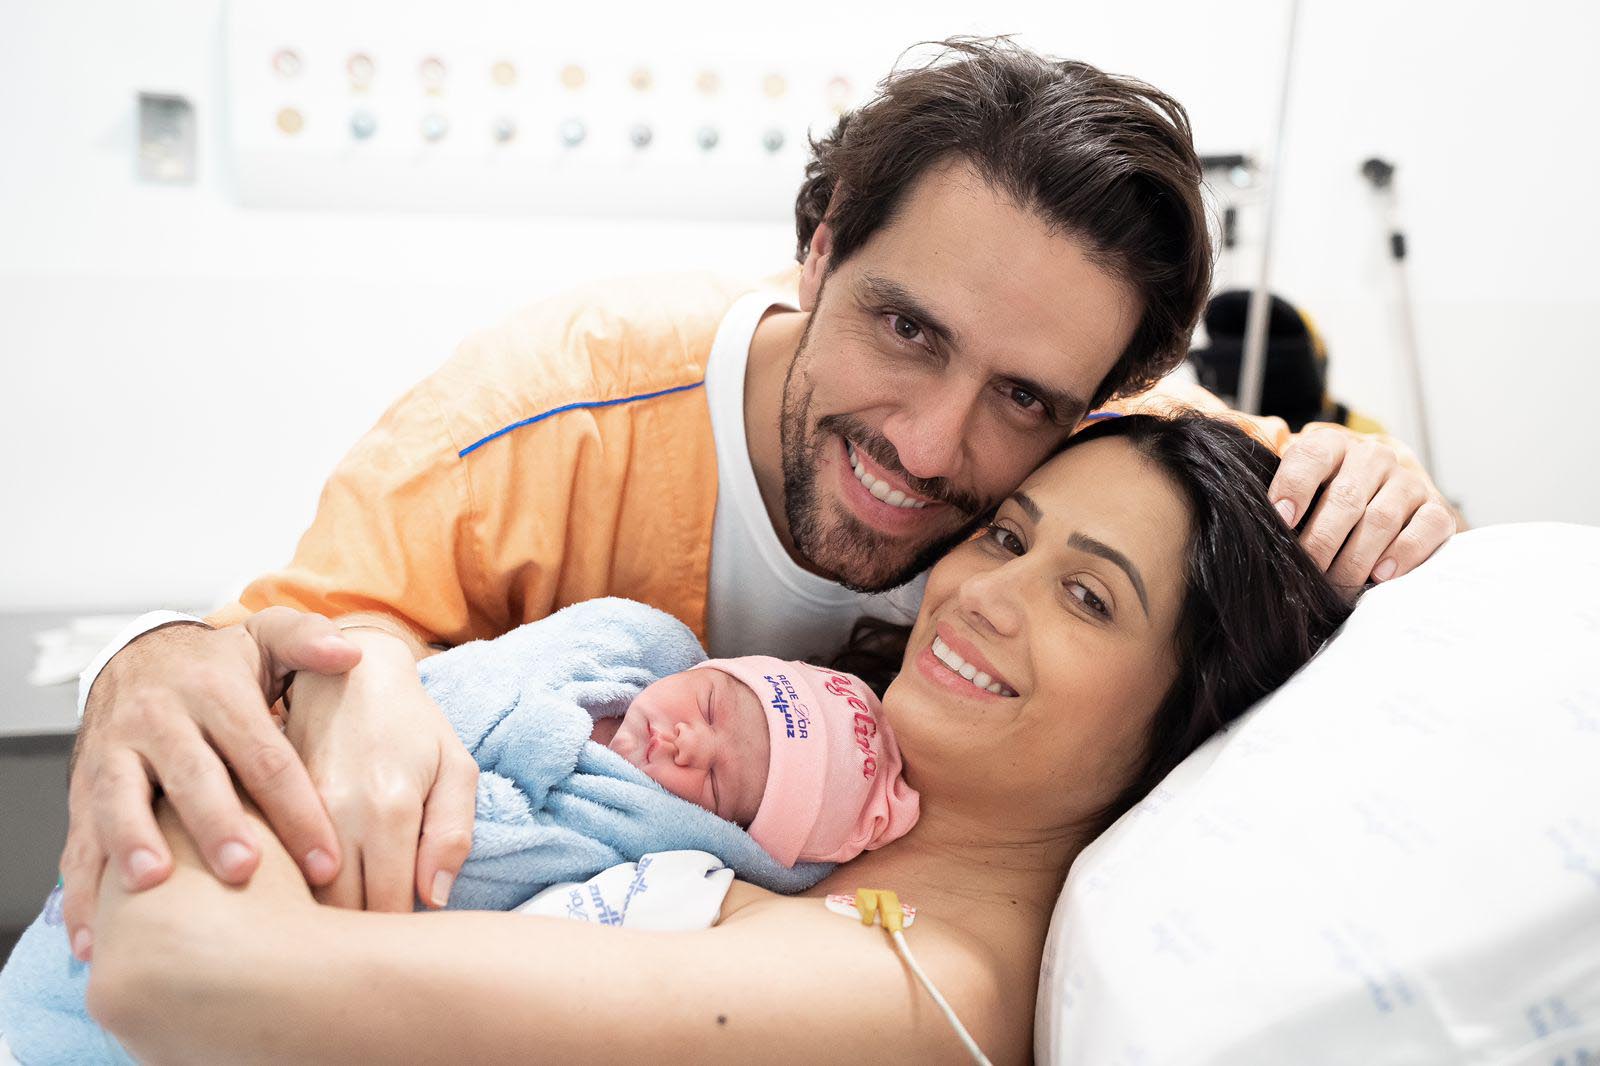 Thiago Arancam apresenta a filha recém-nascida, Angelina